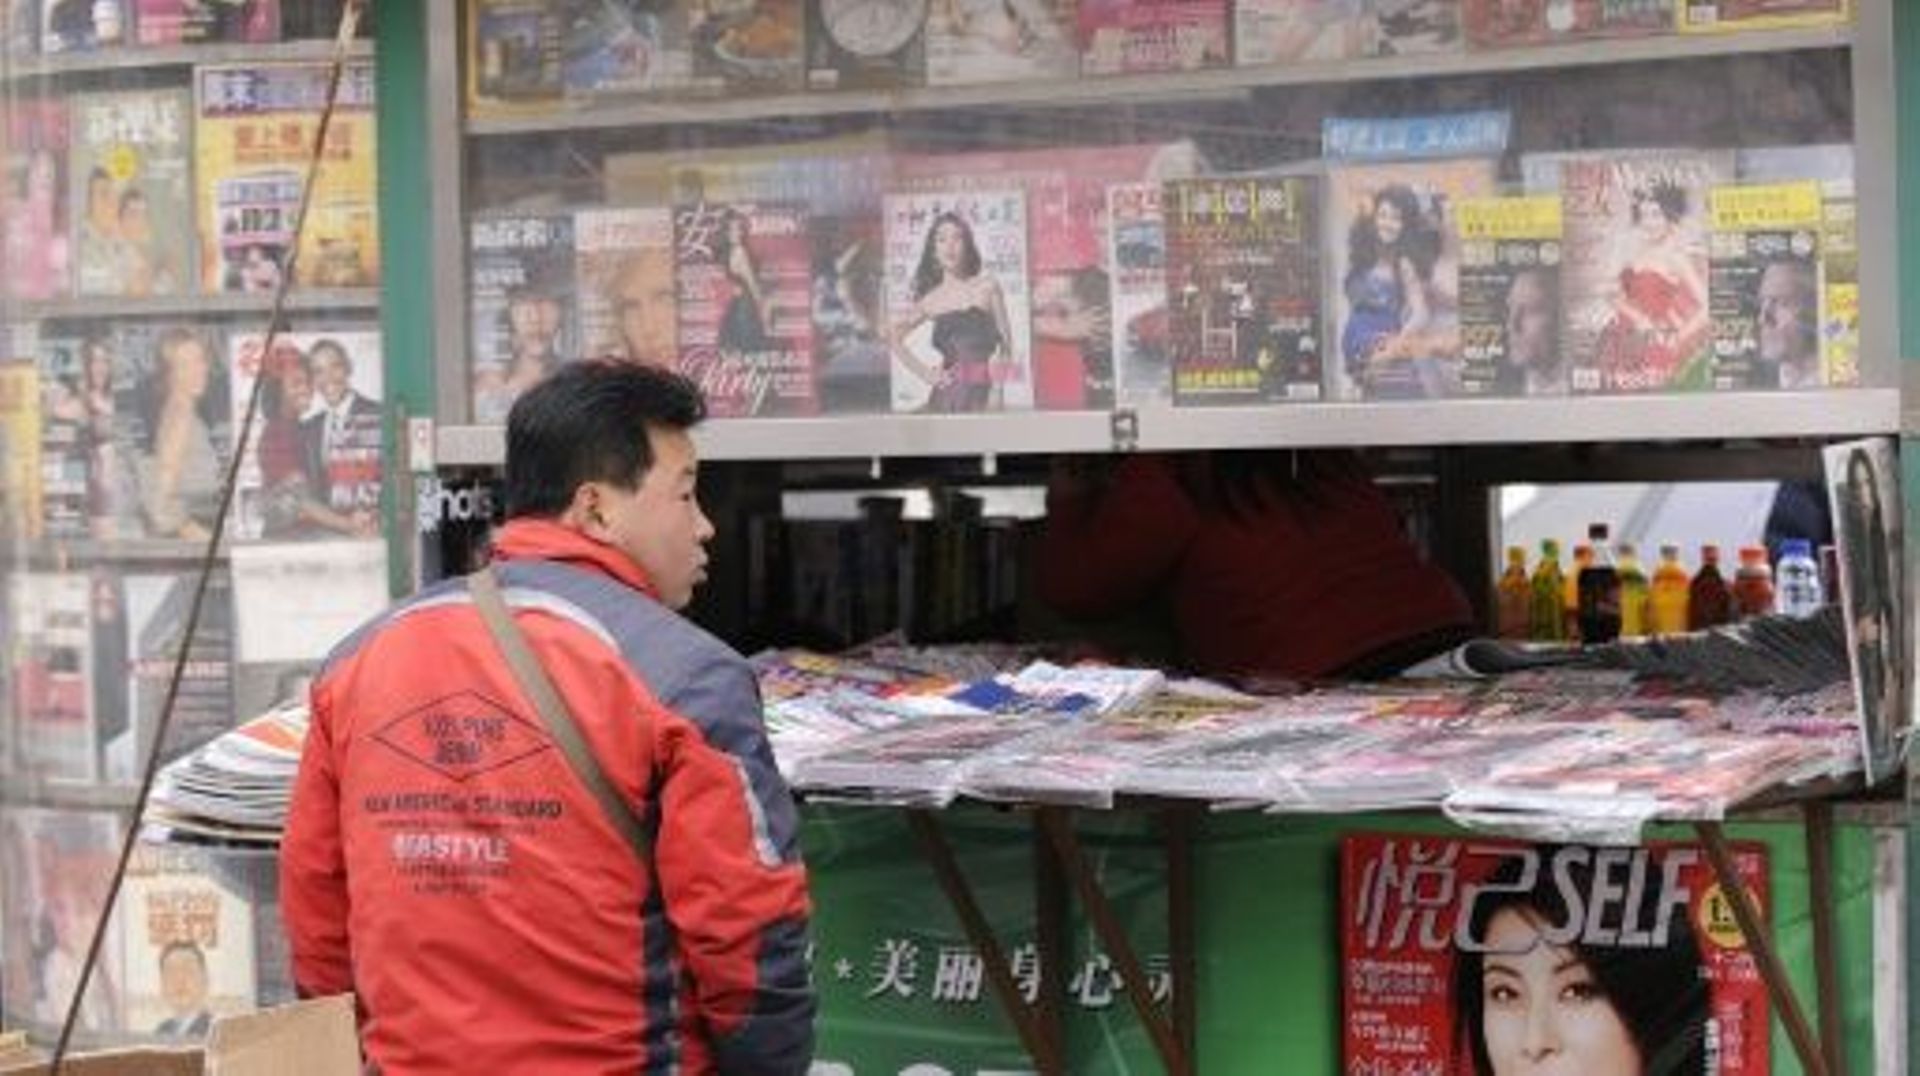 Un journaliste financier a "avoué" avoir provoqué "la panique et le désordre" sur les marchés boursiers chinois et infligé des "pertes énormes au pays", ont rapporté les médias d'Etat chinois dimanche